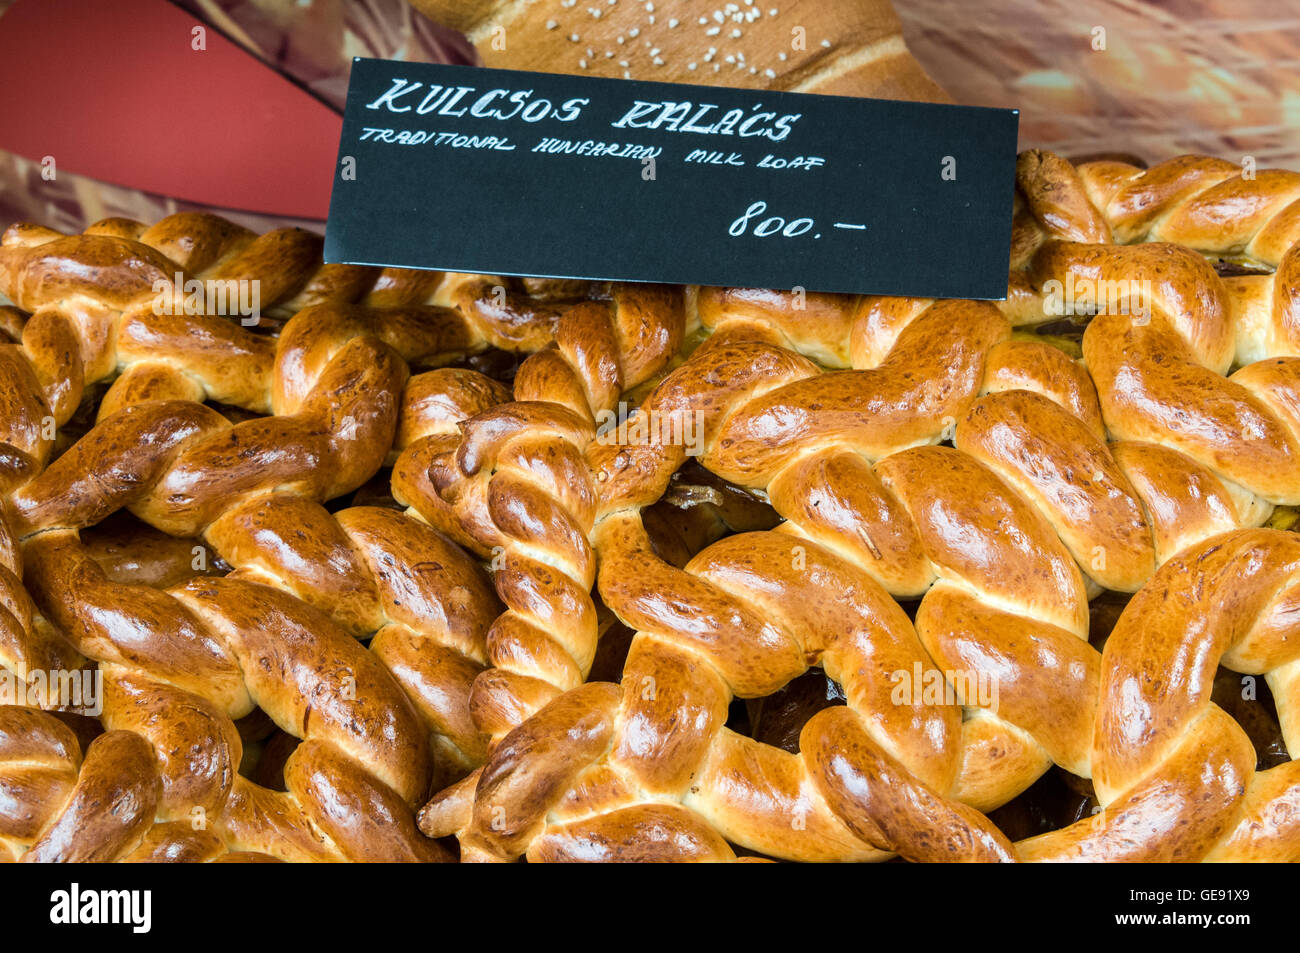 Kalács ist eine ungarische süßes Brot Brötchen, in der Regel in einer geflochtenen Form gebacken und traditionell für die wir als sehr ähnlich Stockfoto